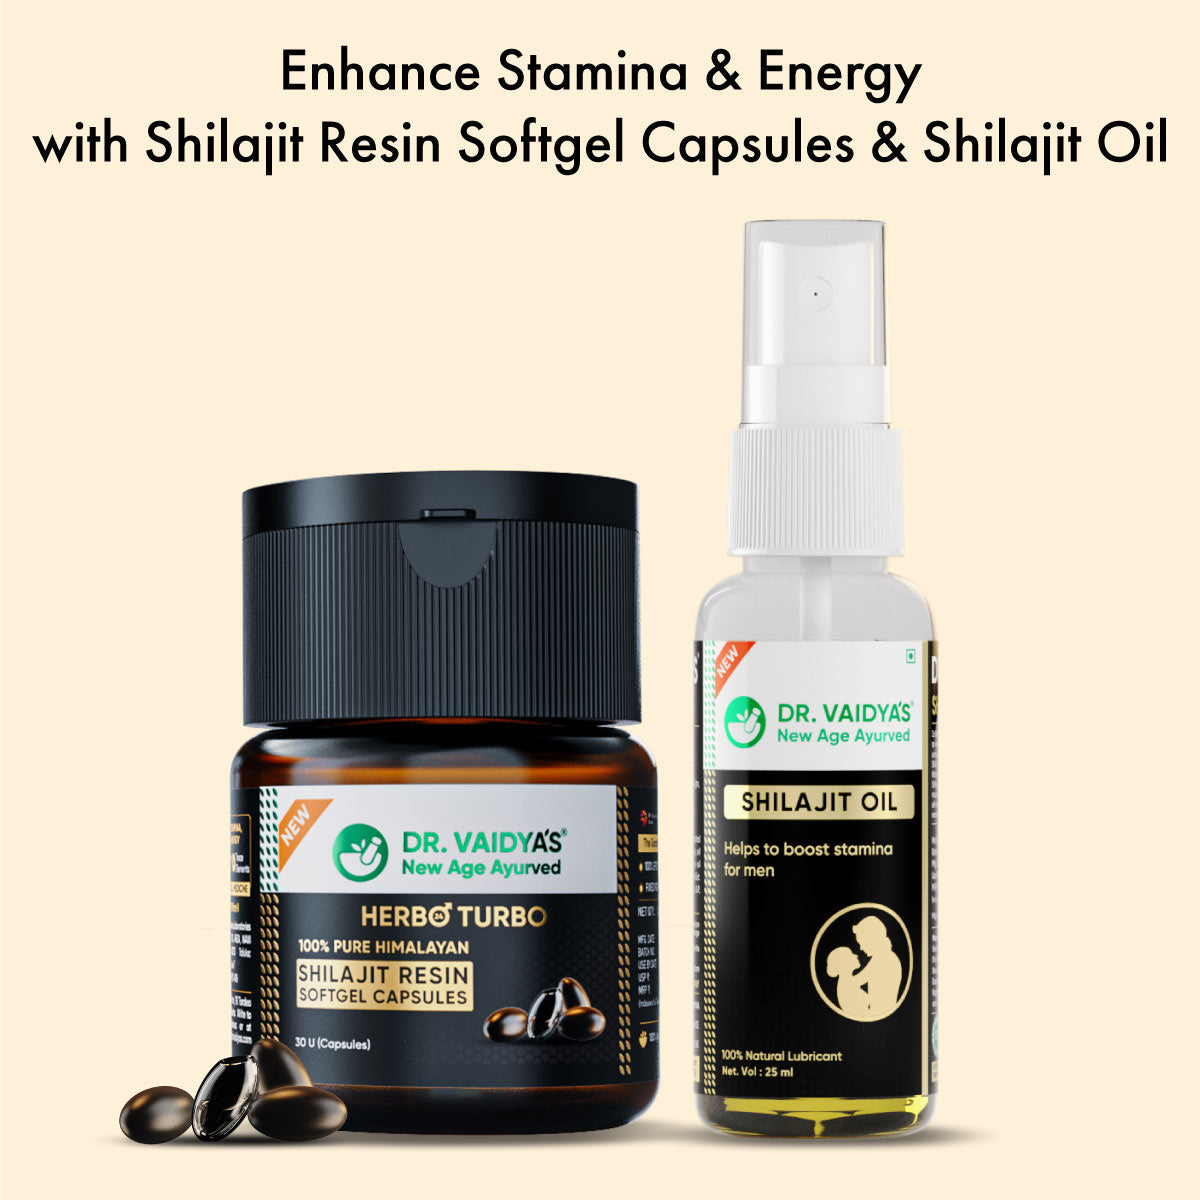 H24T Shilajit Resin SoftGel Capsules + Shilajit Oil FREE